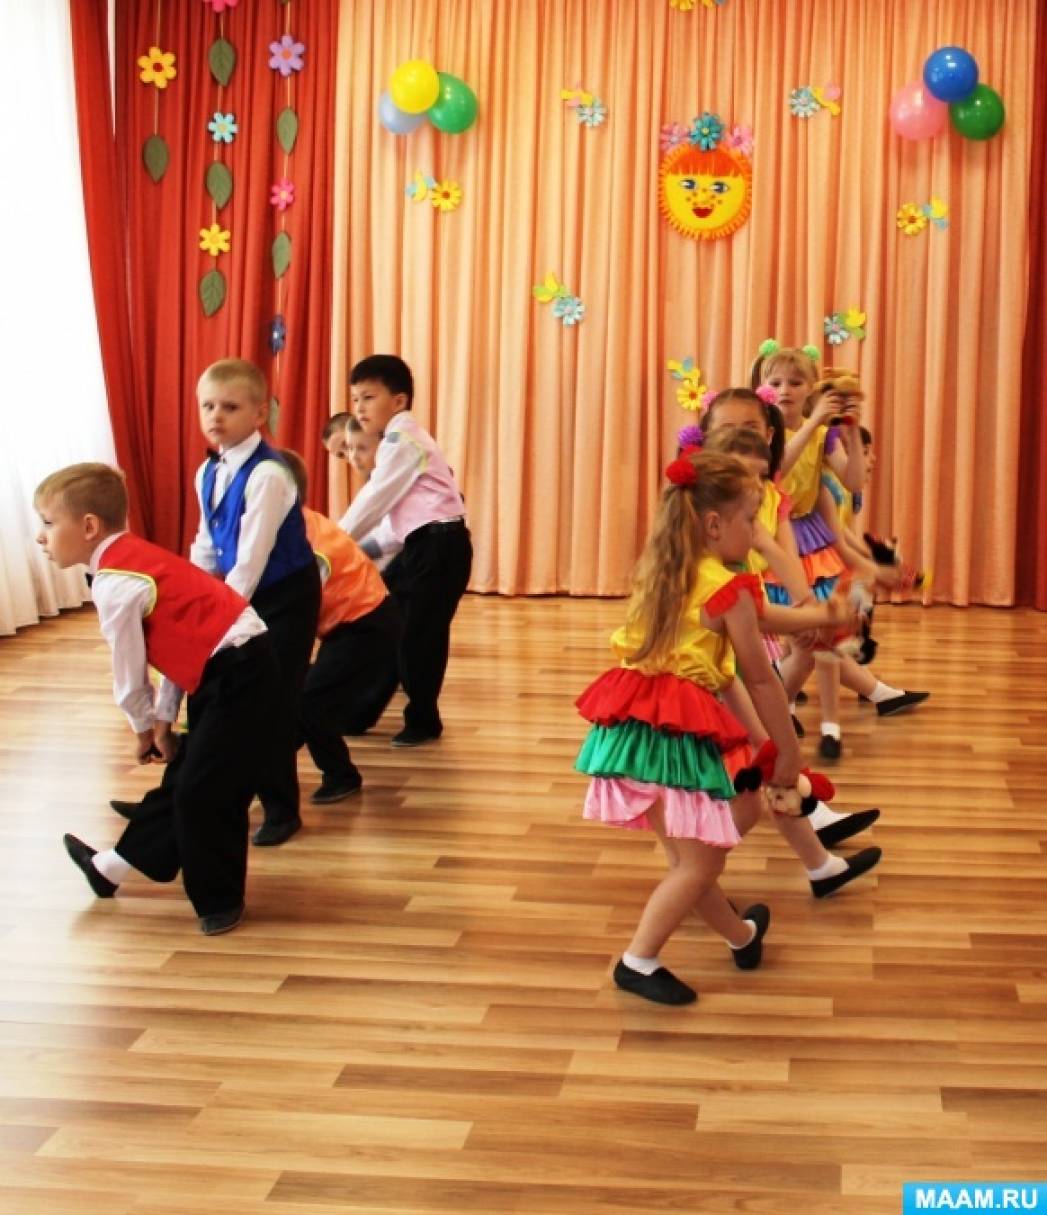 Танец прощайте игрушки в детском саду. Воспитатель танцует с детьми. Танец детей с воспитателями. Танец воспитателей в детском саду. Постановка детского танца в детском саду.